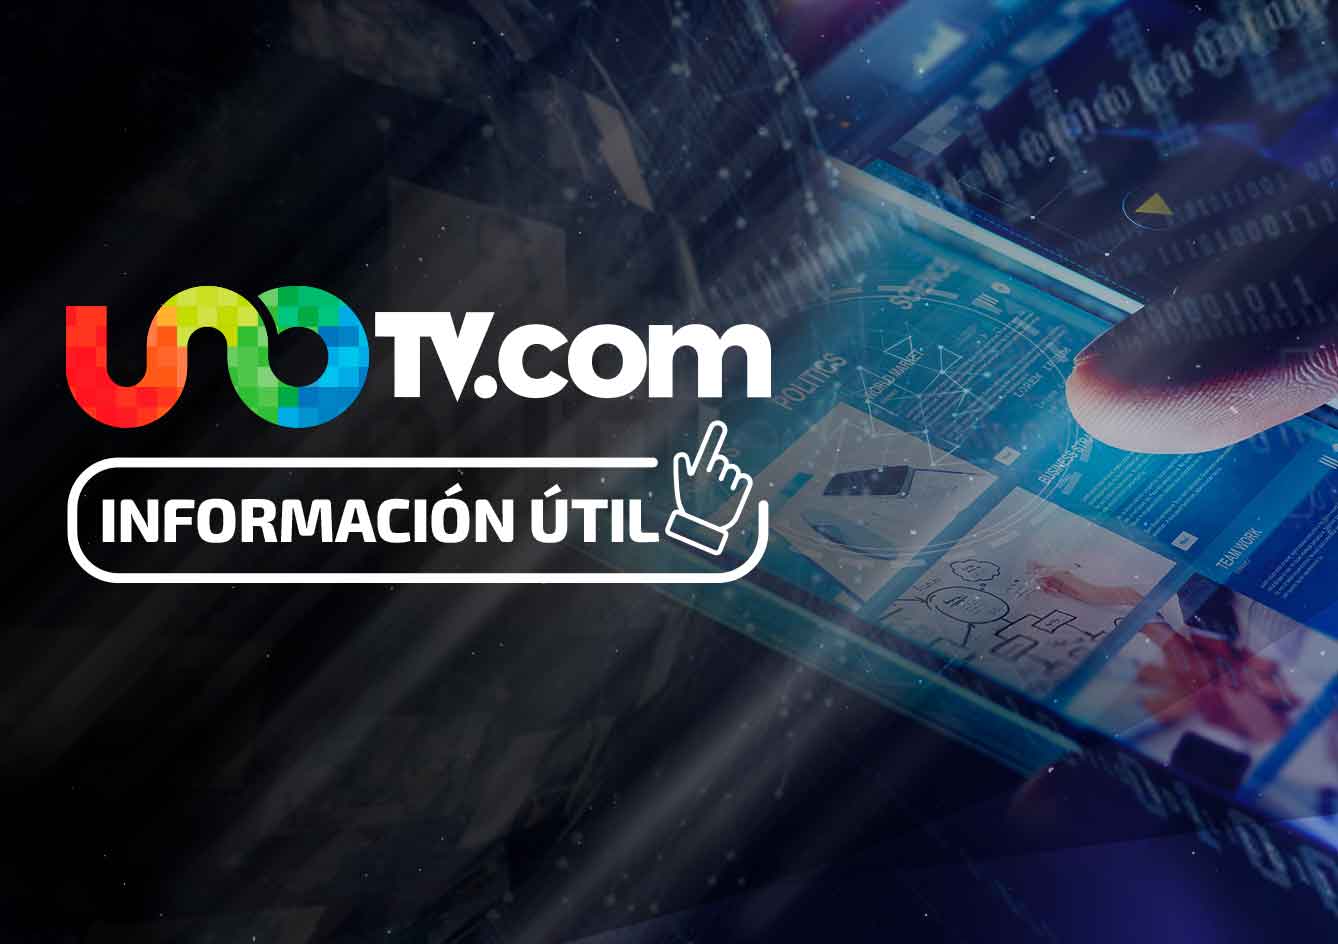 Tren México-Toluca, estará listo a finales de 2018: SCT